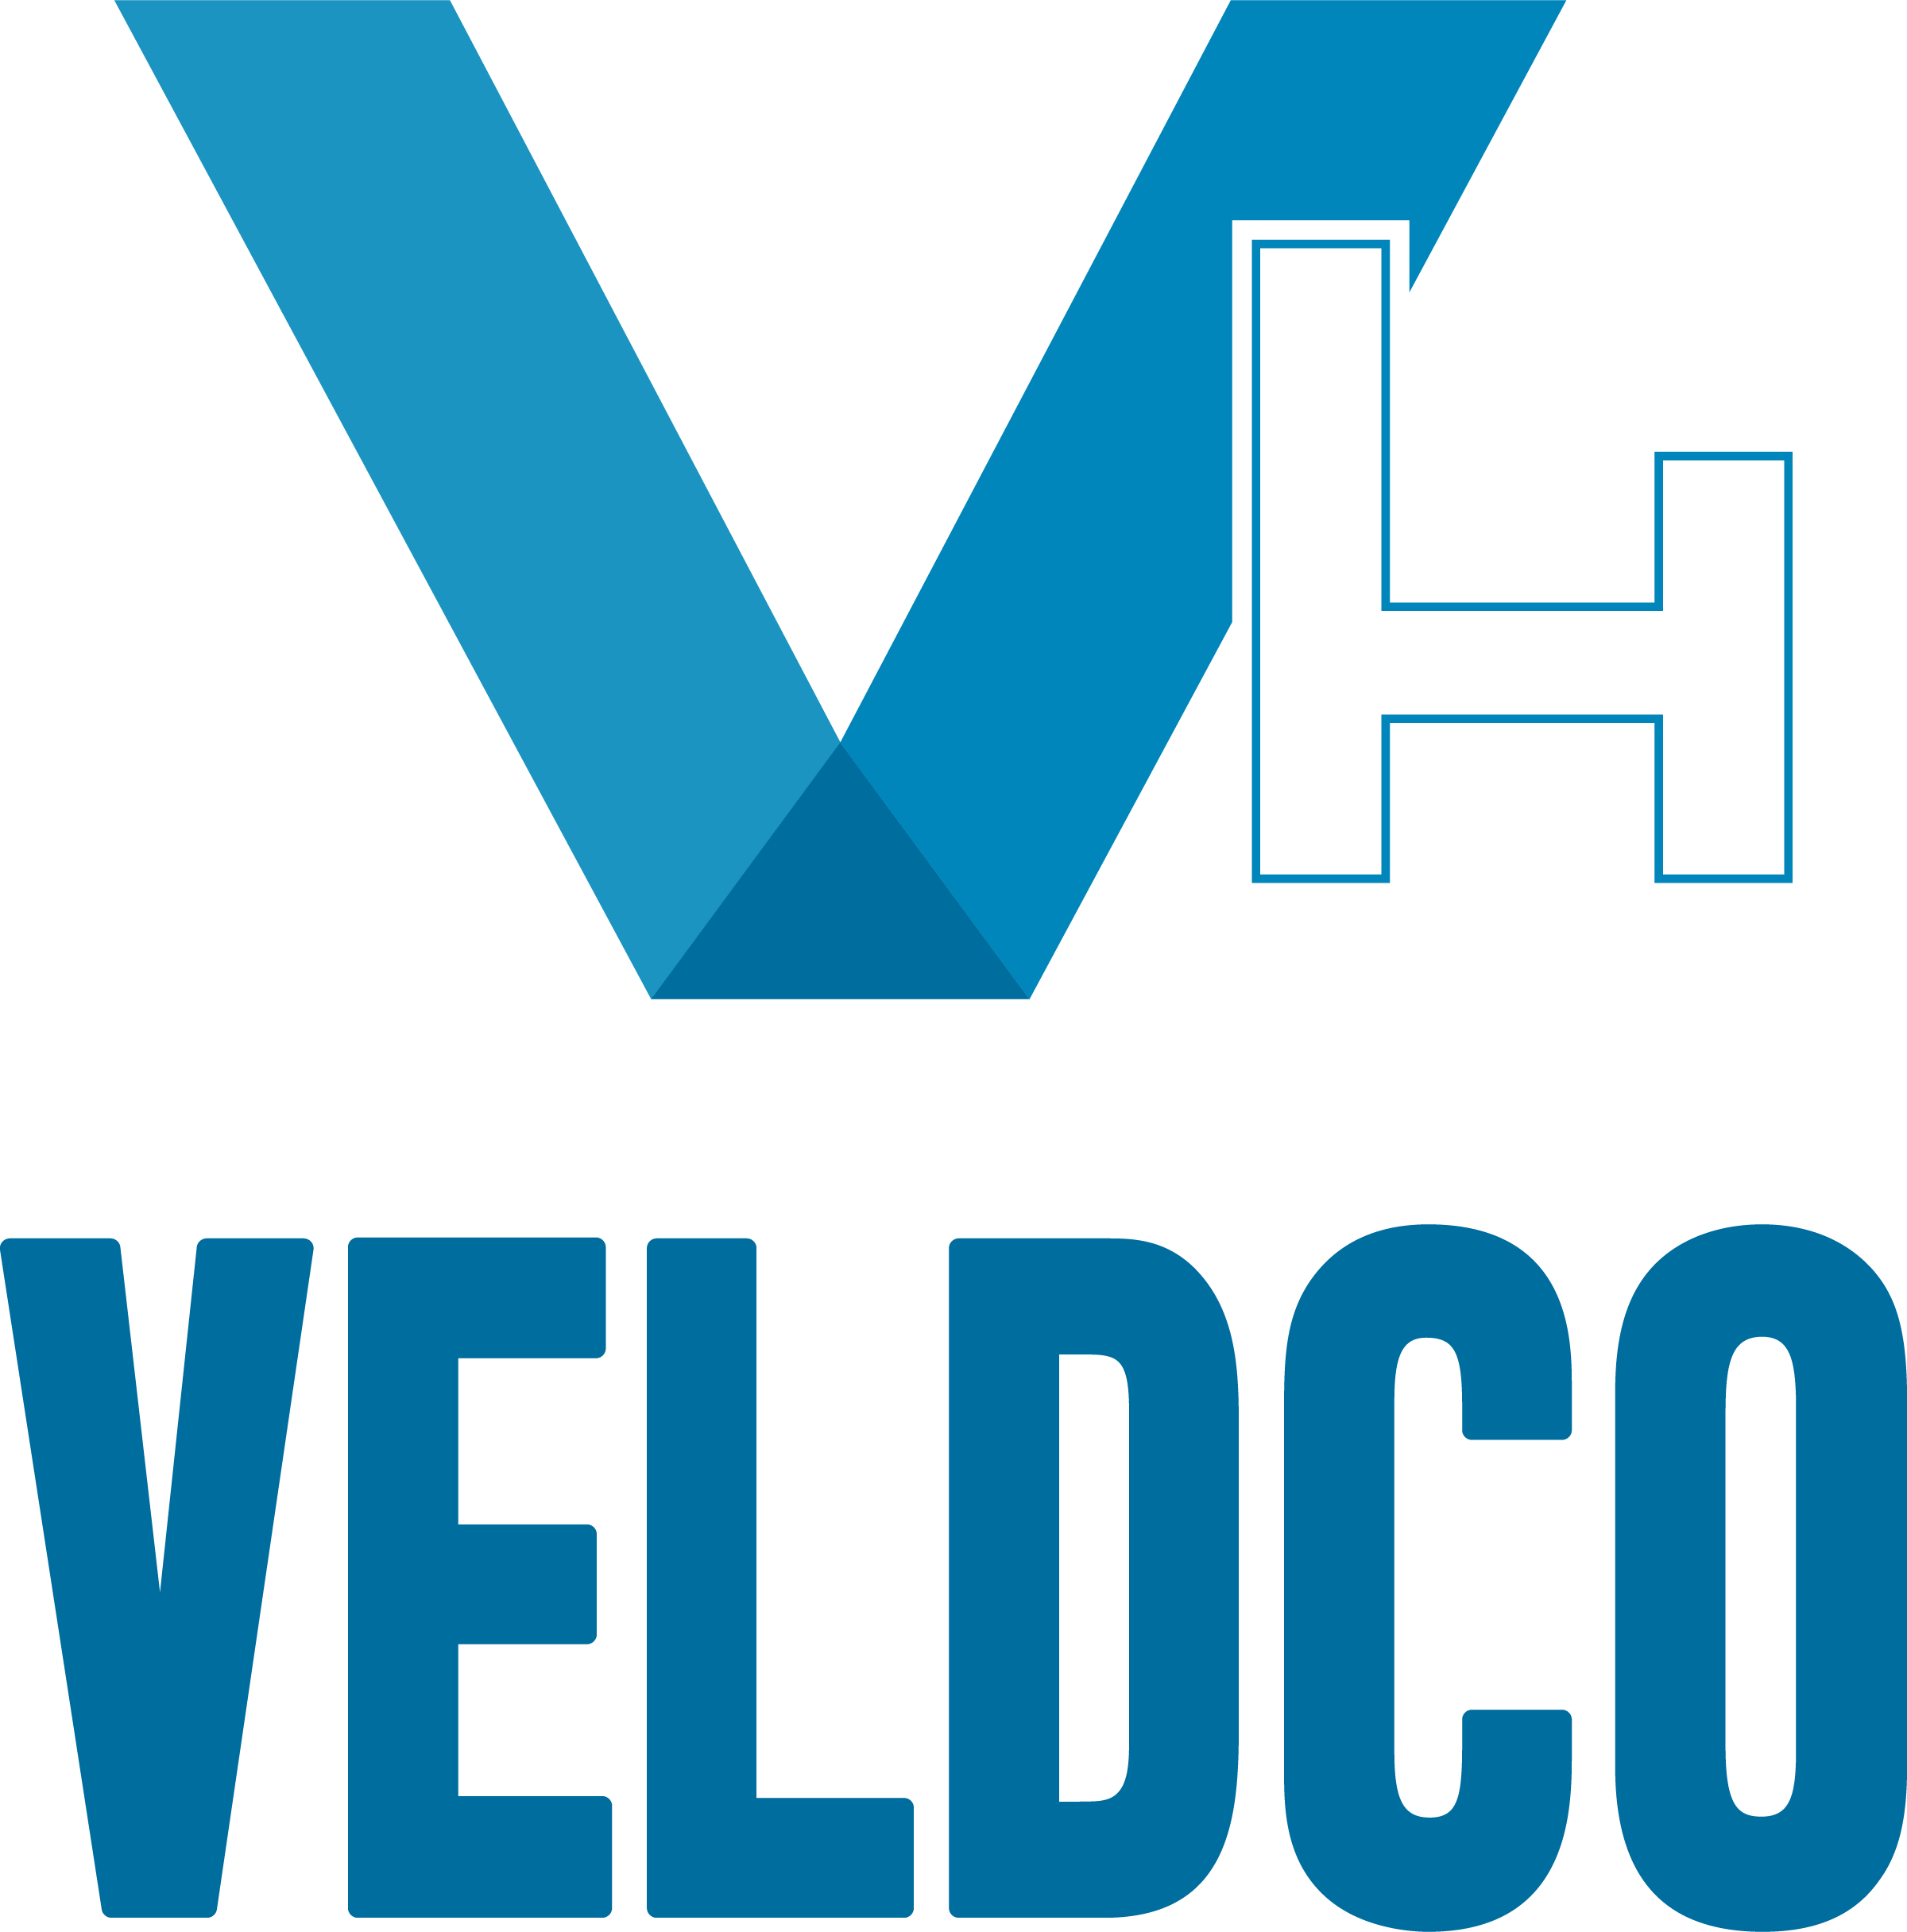 Veldhouse Companies